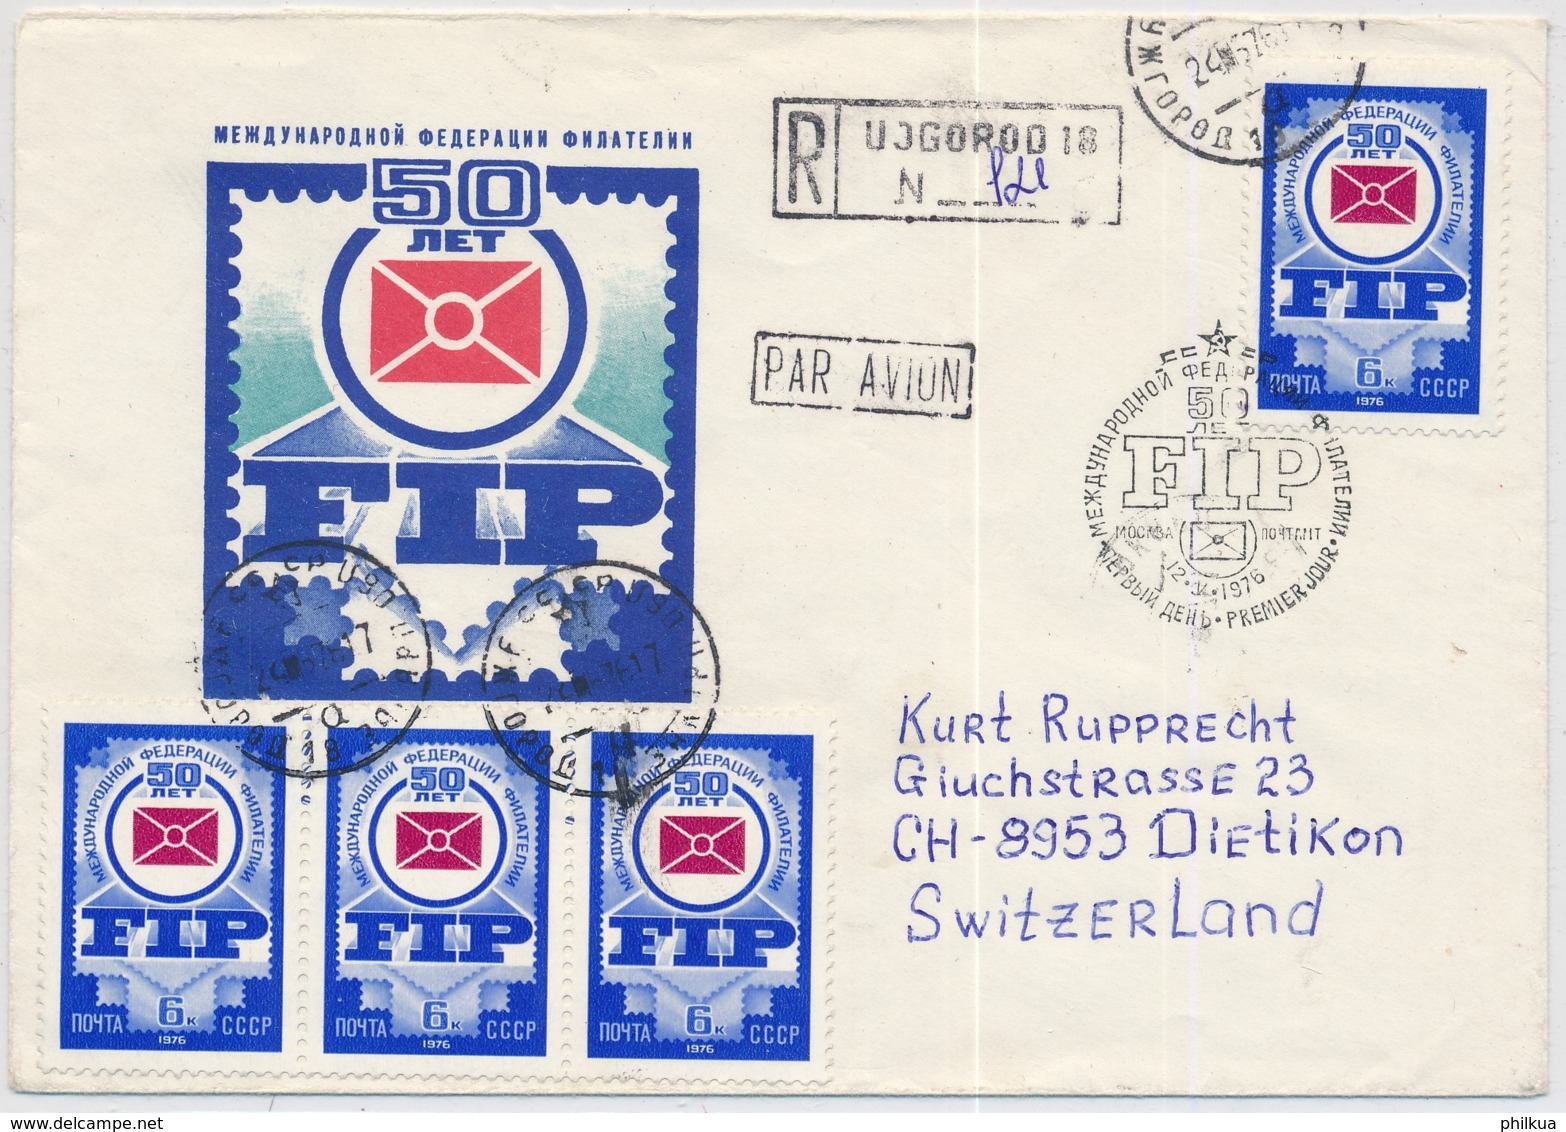 Flugpostbrief Aus Russland / USSR / CCCP Gelaufen Nach Dietikon In Die Schweiz - Briefe U. Dokumente